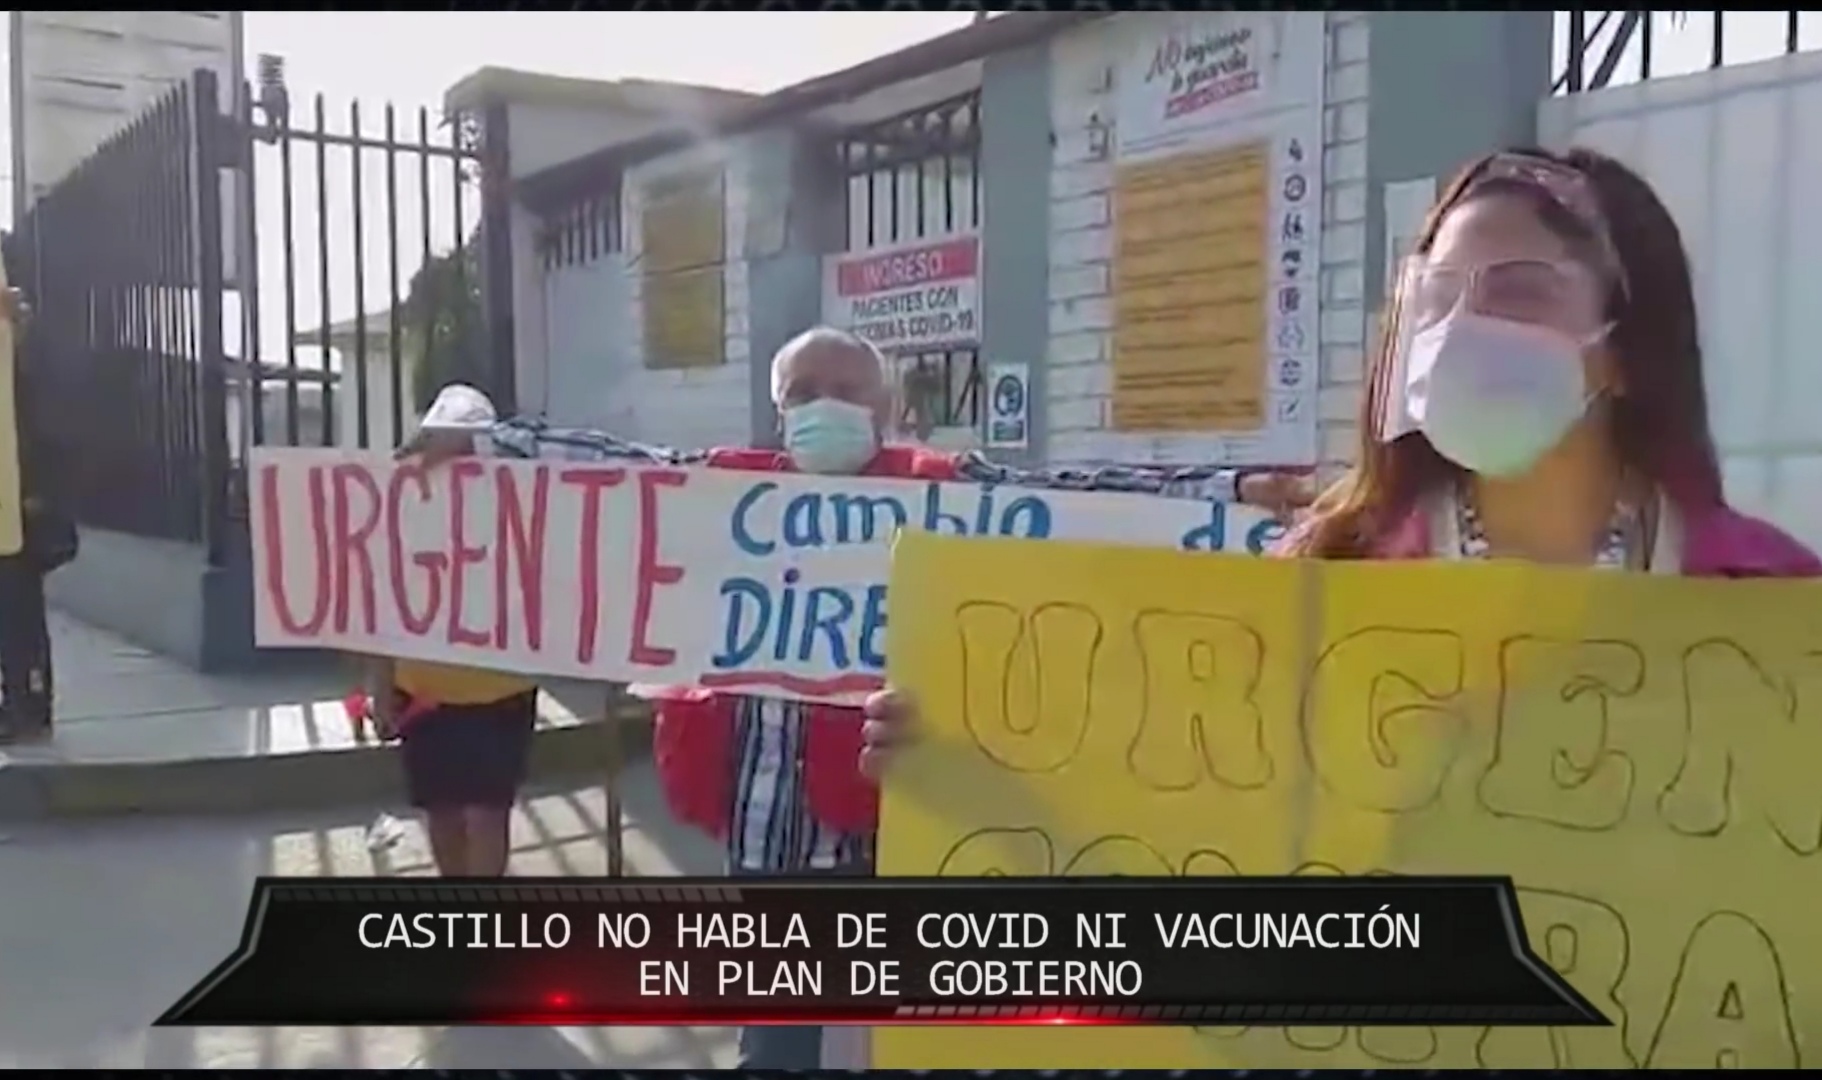 Combutters: Castillo no habla de COVID-19 ni vacunación en plan de gobierno